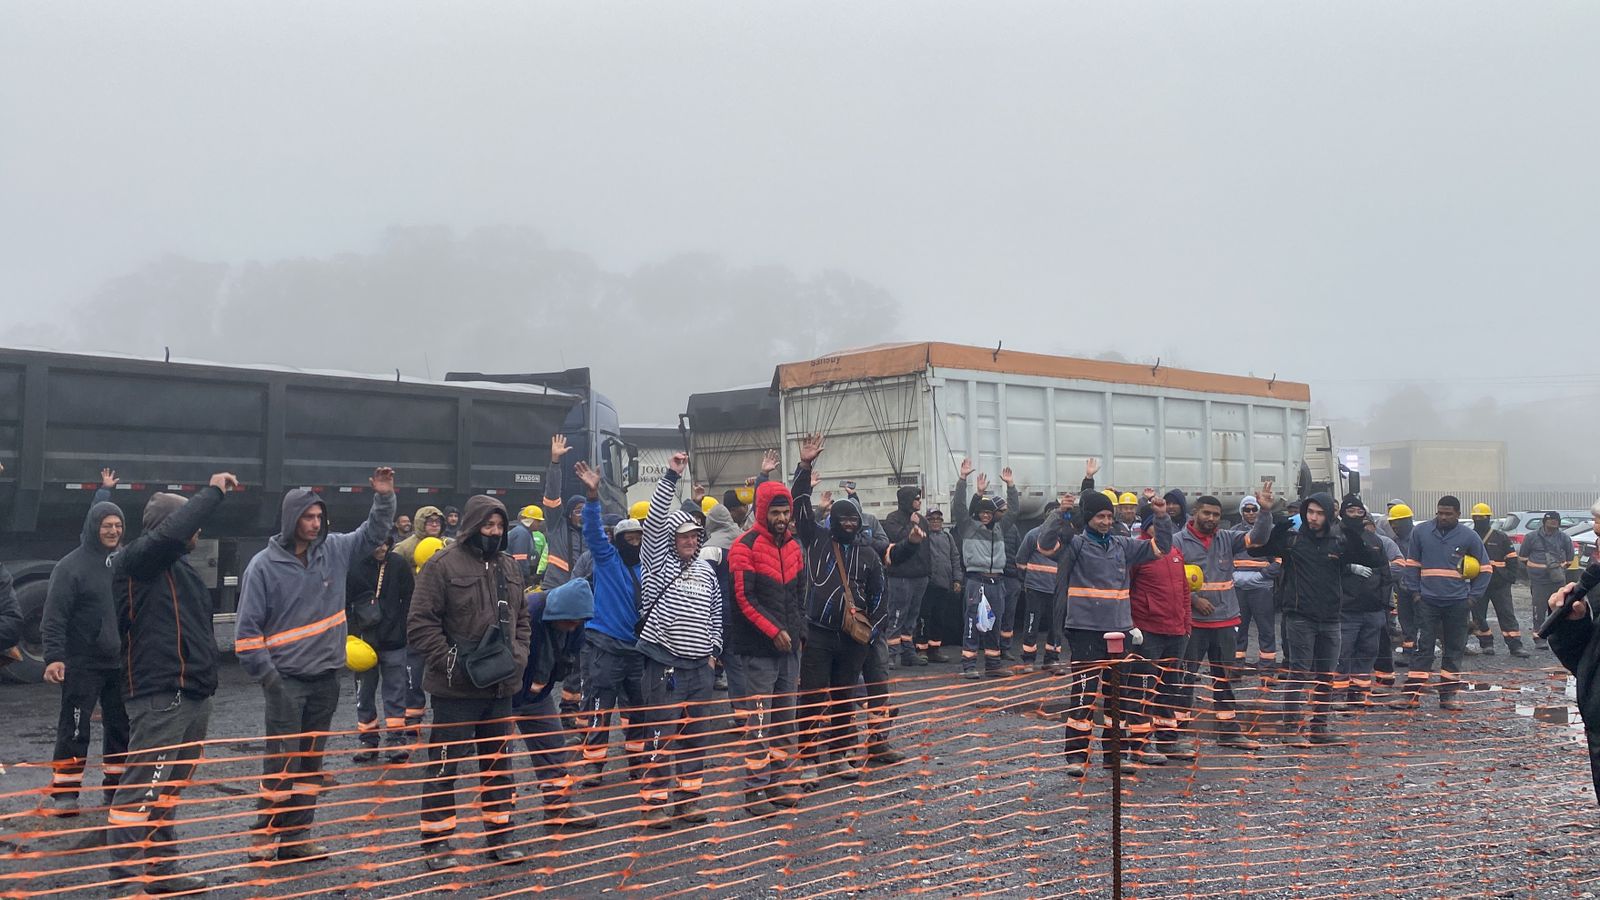 Montaza(Balsa Nova): Metalúrgicos entram em greve pelo acordo salarial e por condições dignas de trabalho